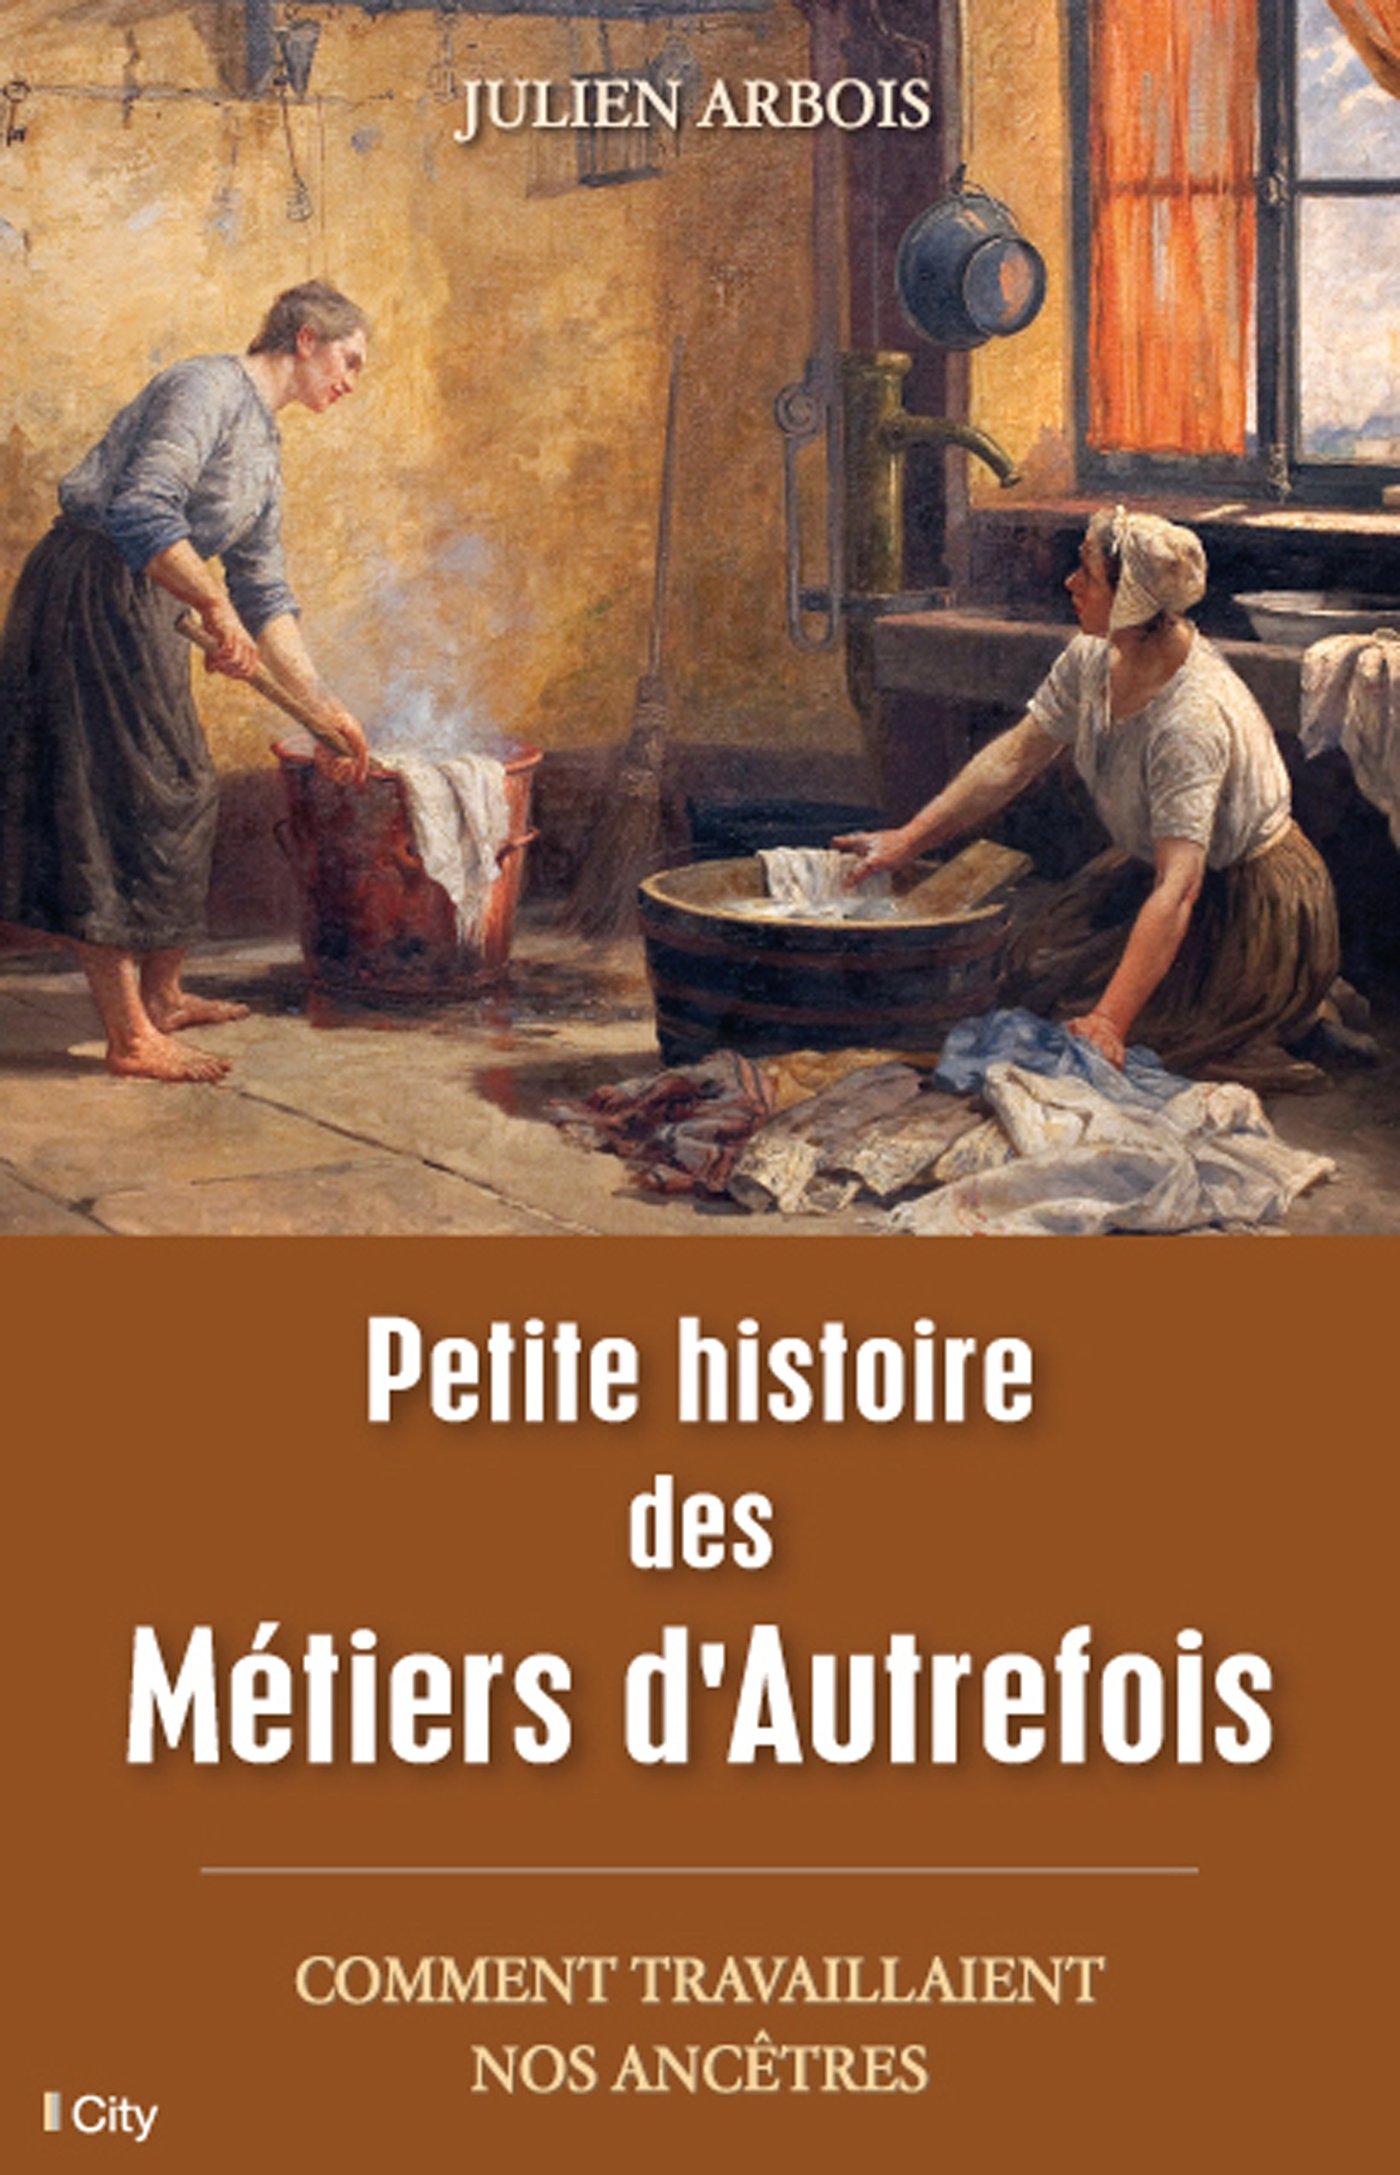 Petite histoire des métiers d'autrefois. Comment travaillaient nos ancêtres, 2014, 272 p.